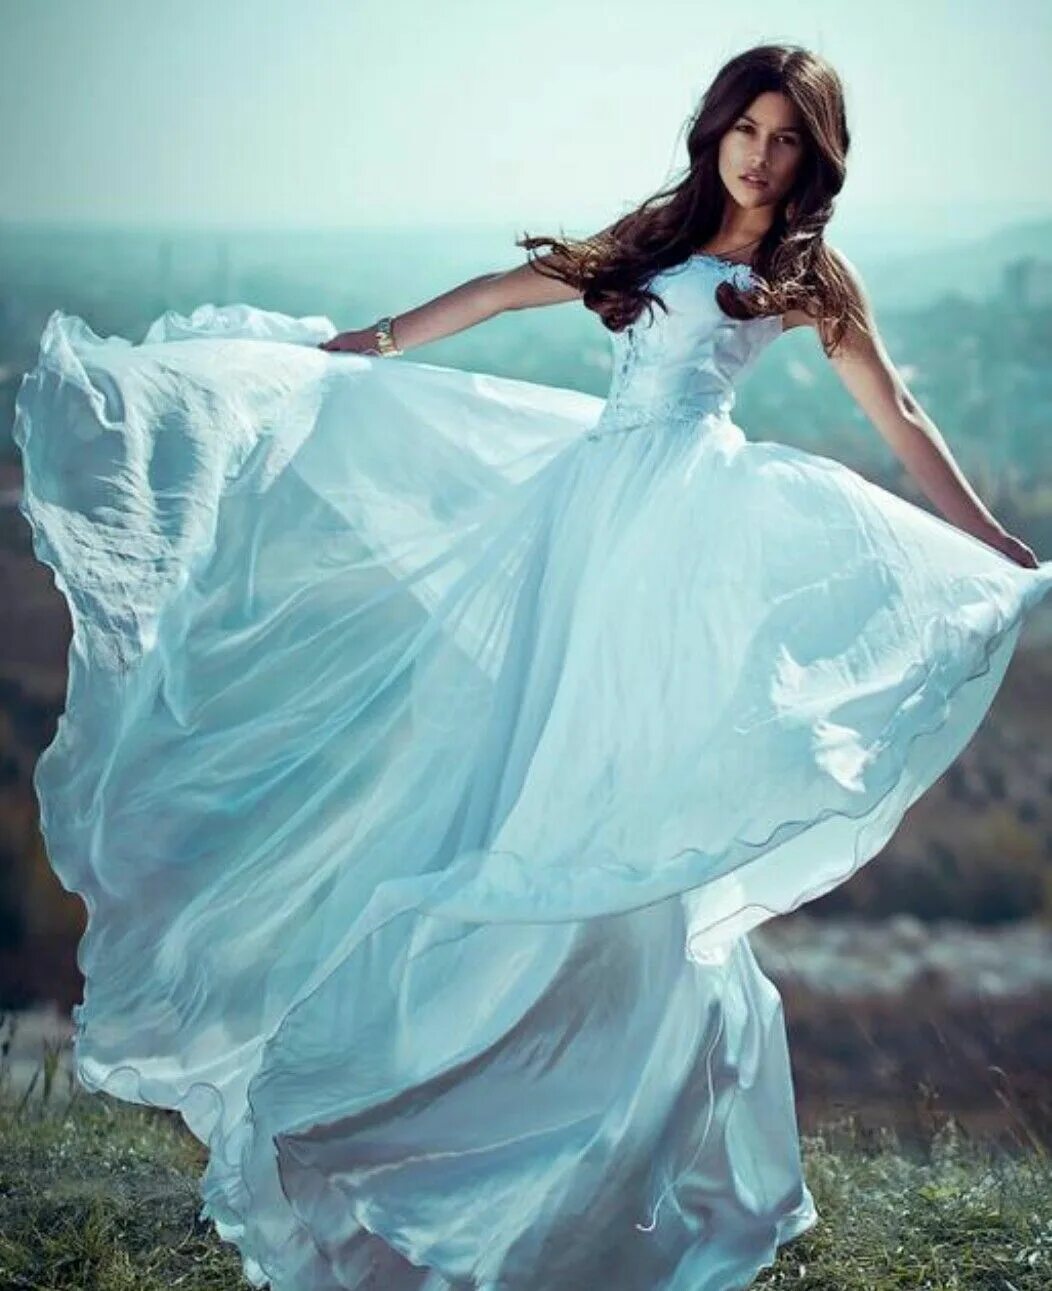 Красивая девочка в белом платье. Воздушное платье. Девушка в платье красивая. Девушка в длинном платье.